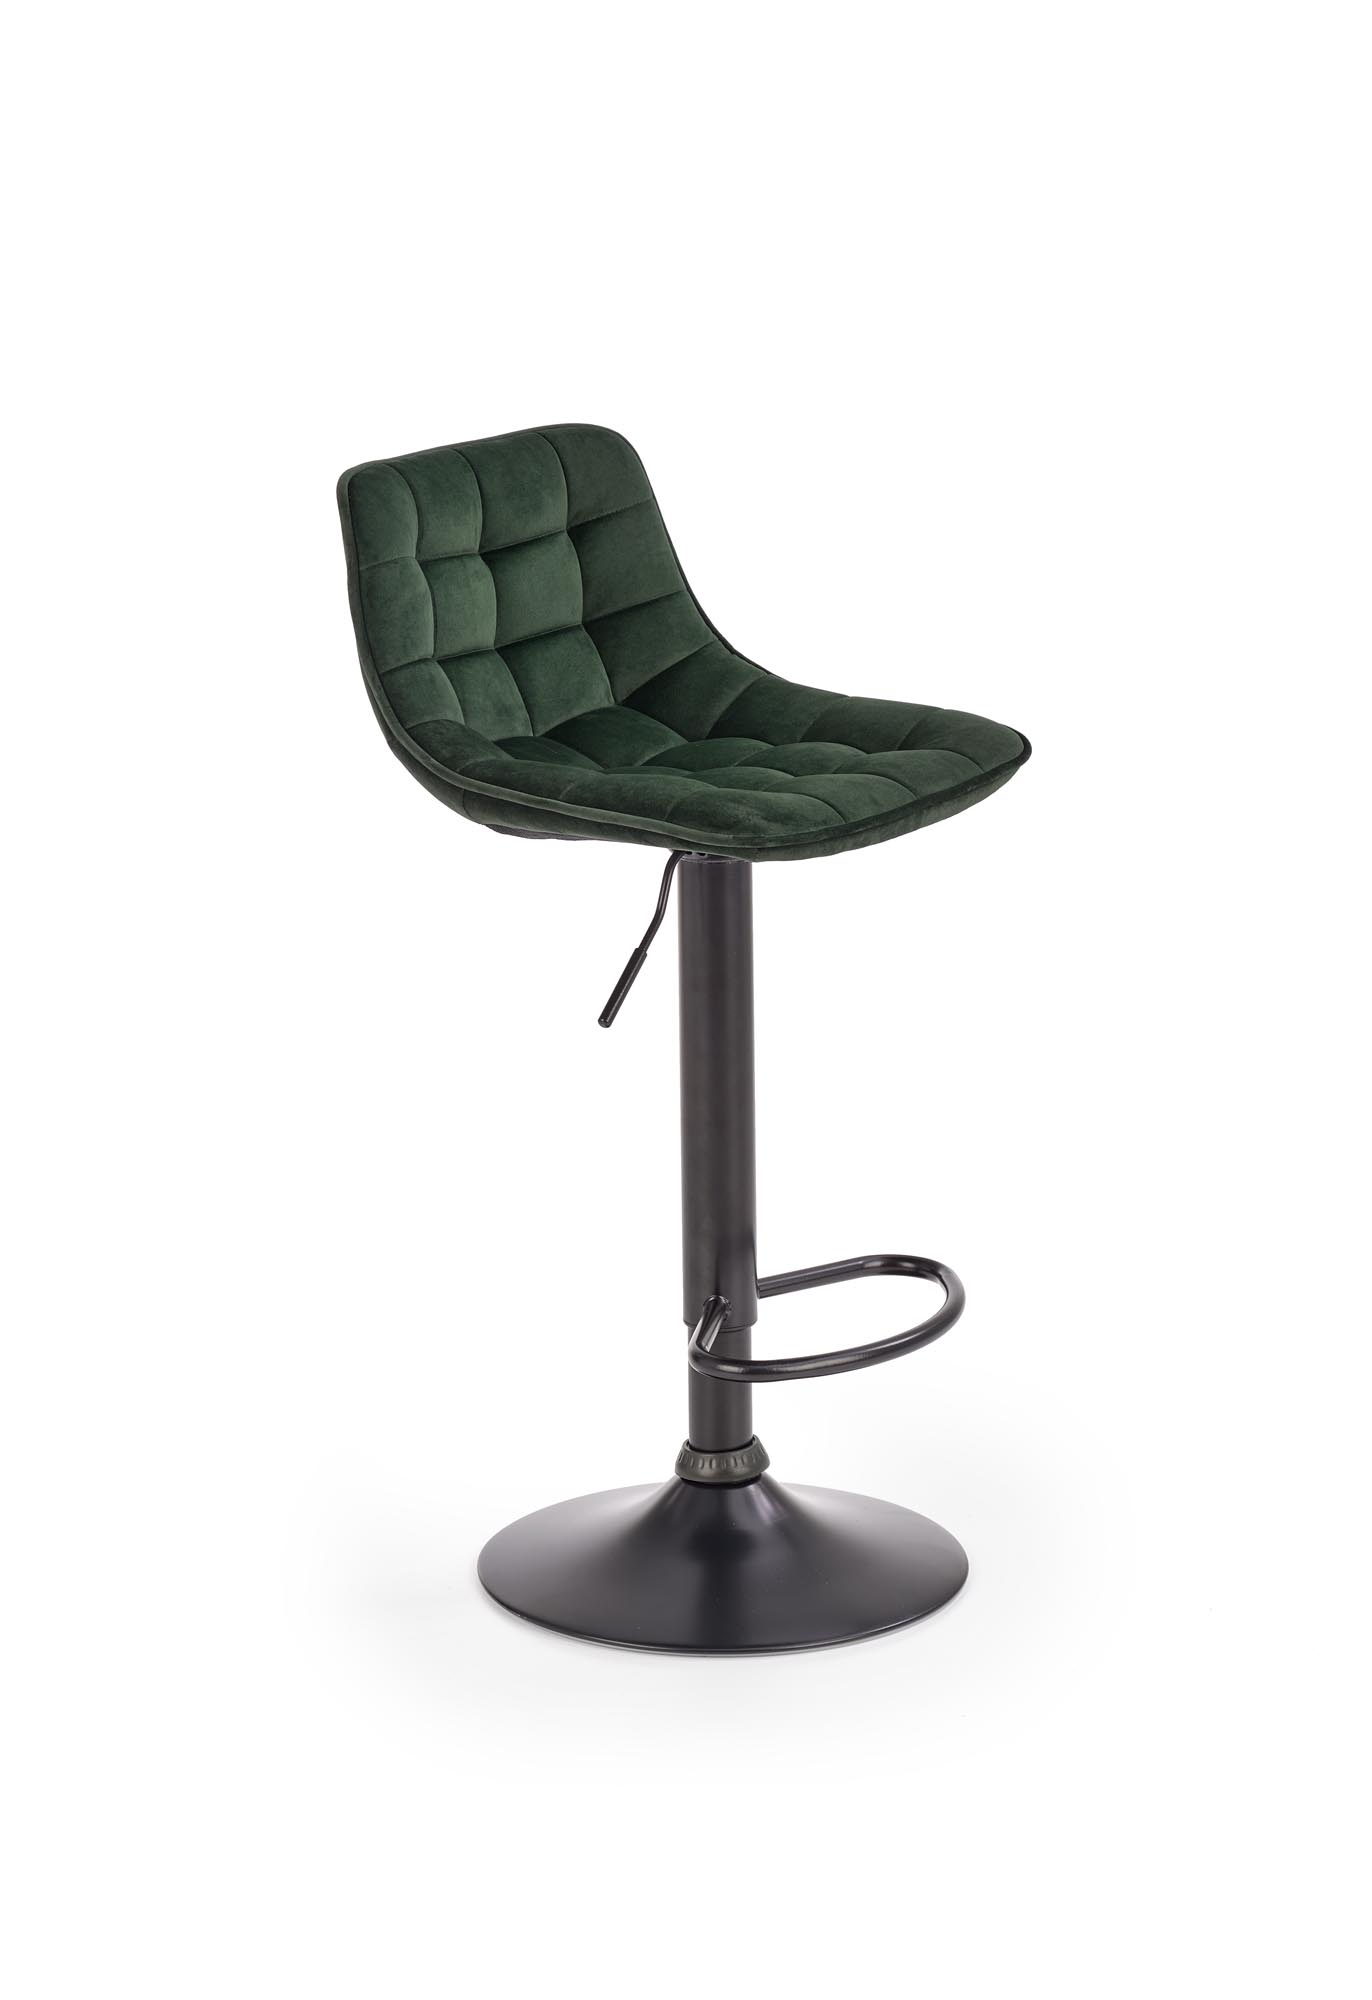 Barová židle GRANADA - zelená